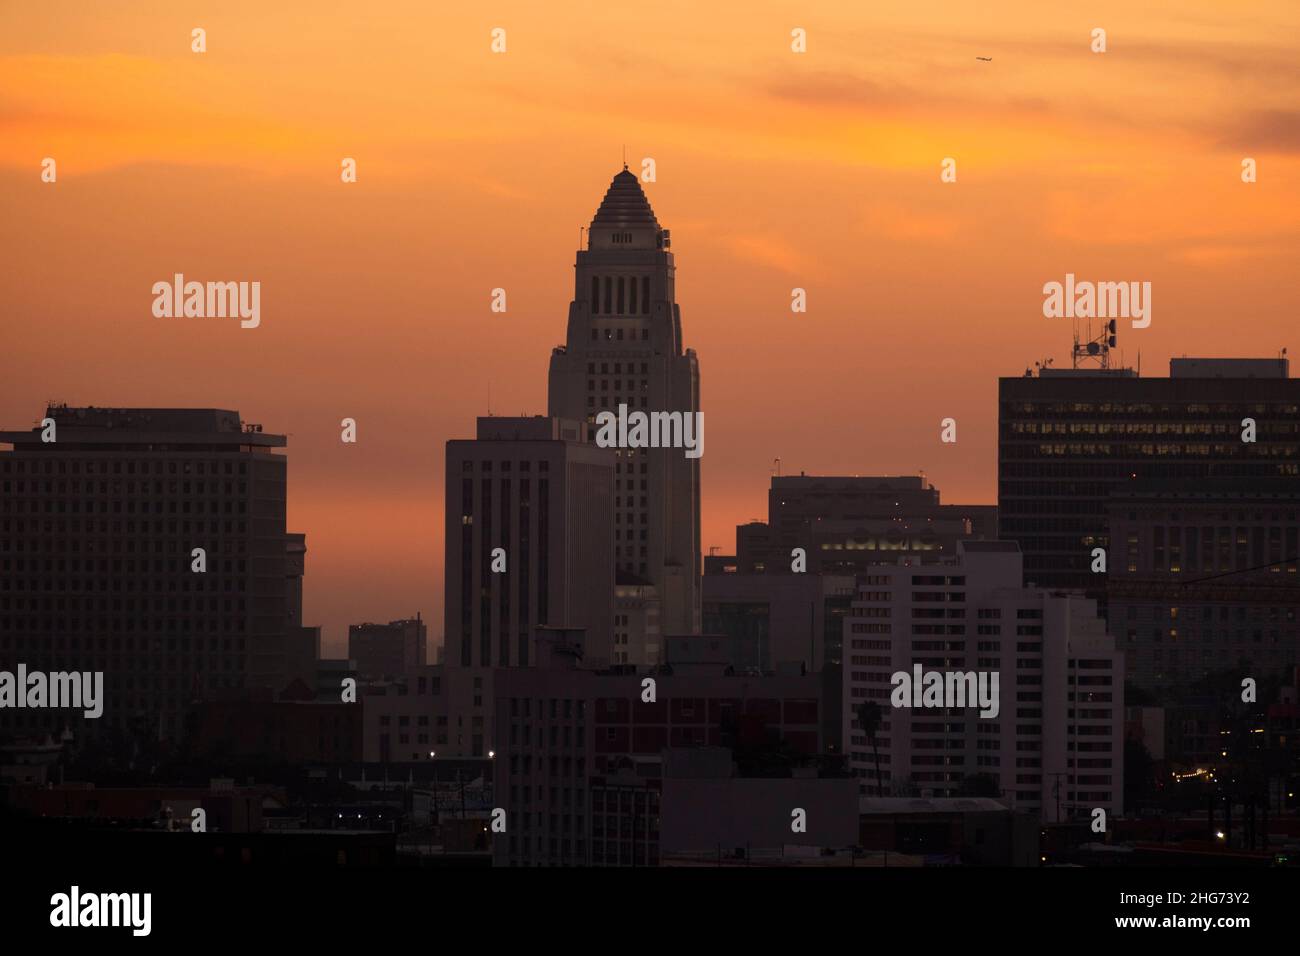 Ikonische Aussicht auf das Rathaus von Los Angeles bei Sonnenuntergang Stockfoto